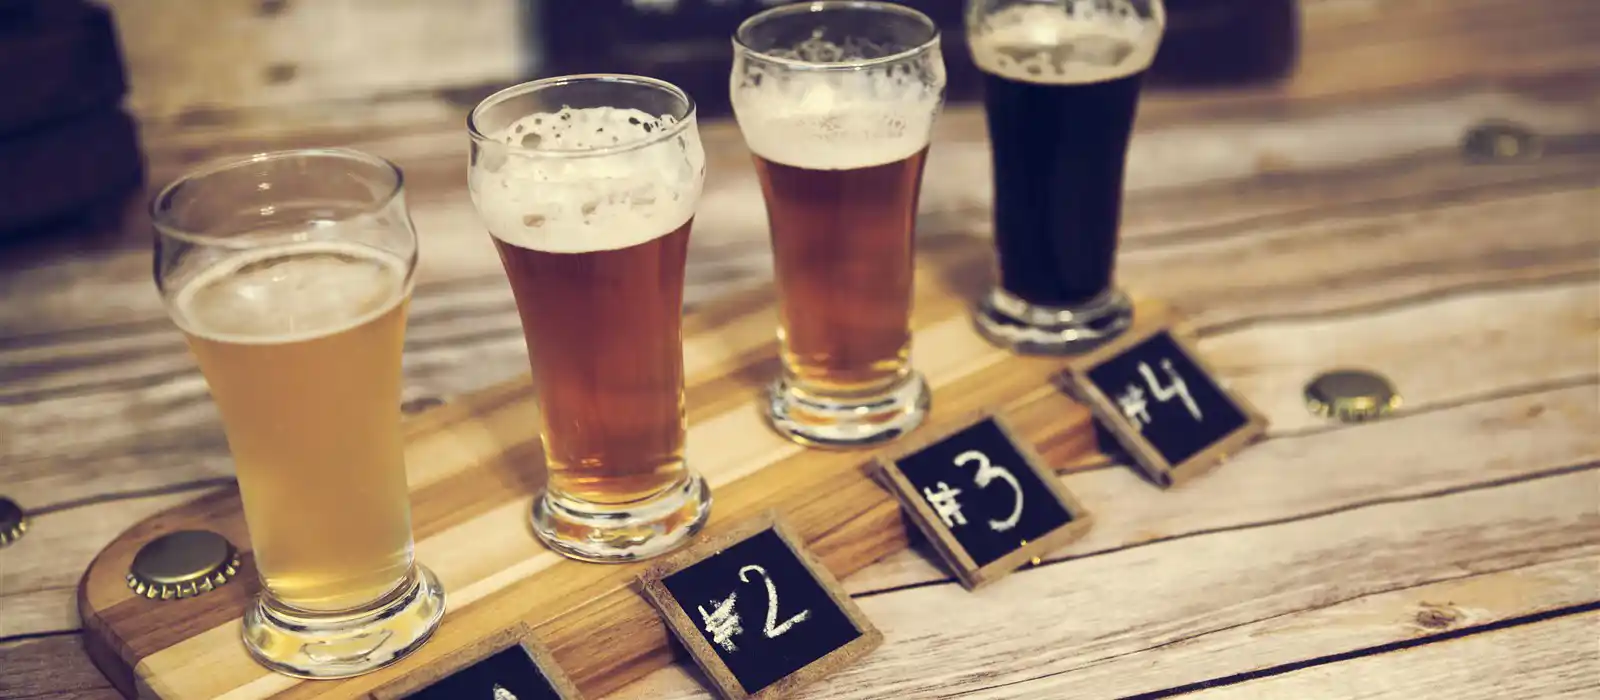 Beers, hops and breweries